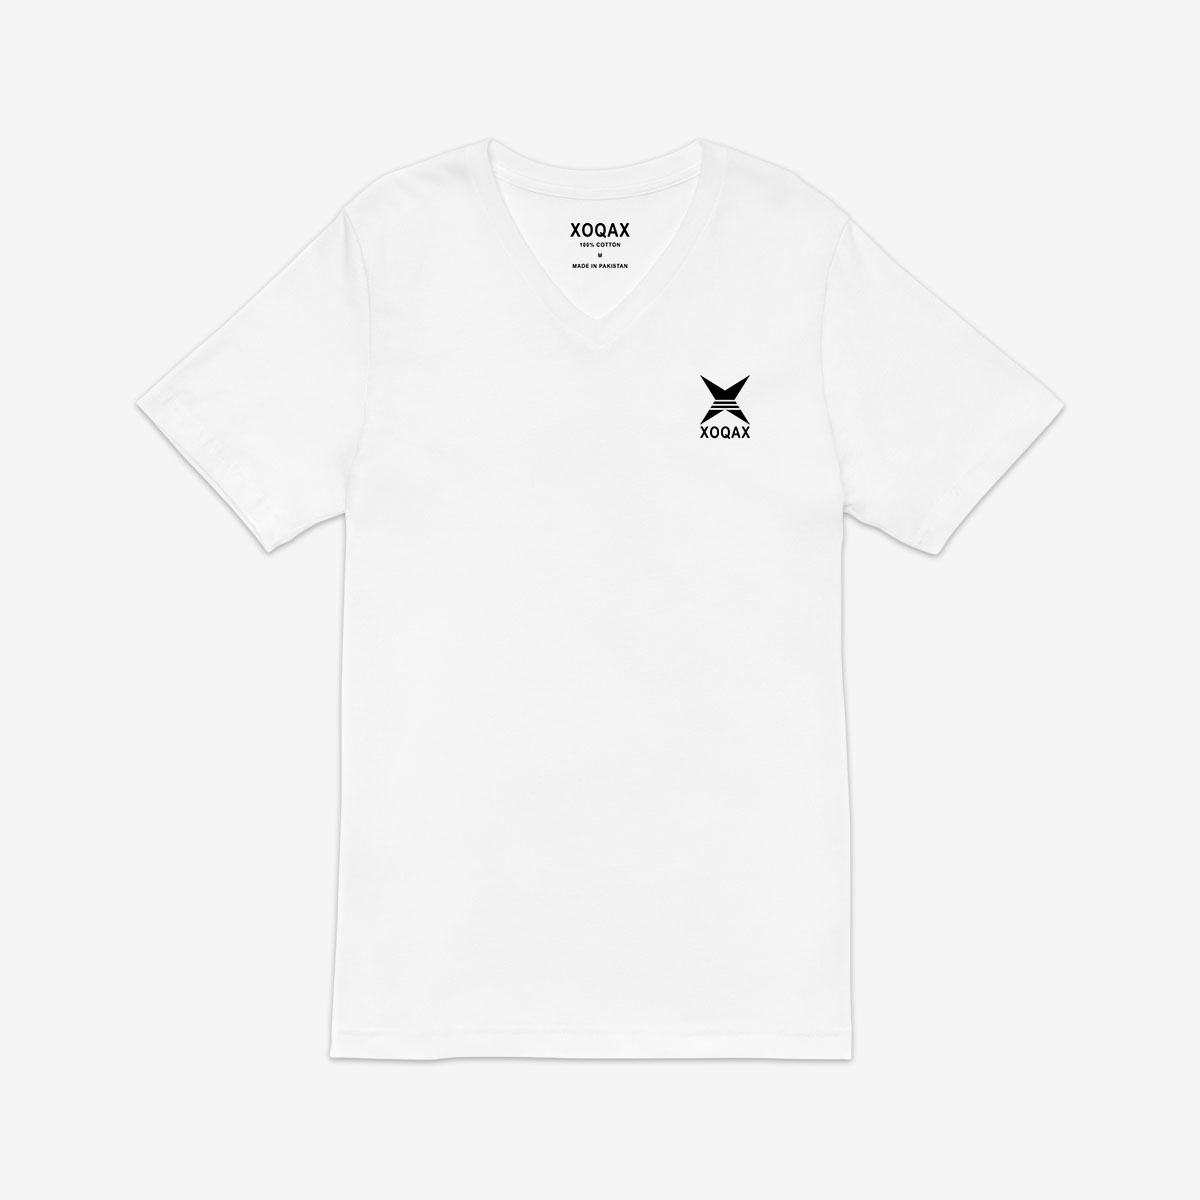 xoqax-basic-t-shirts-v-neck-half-sleeves-white